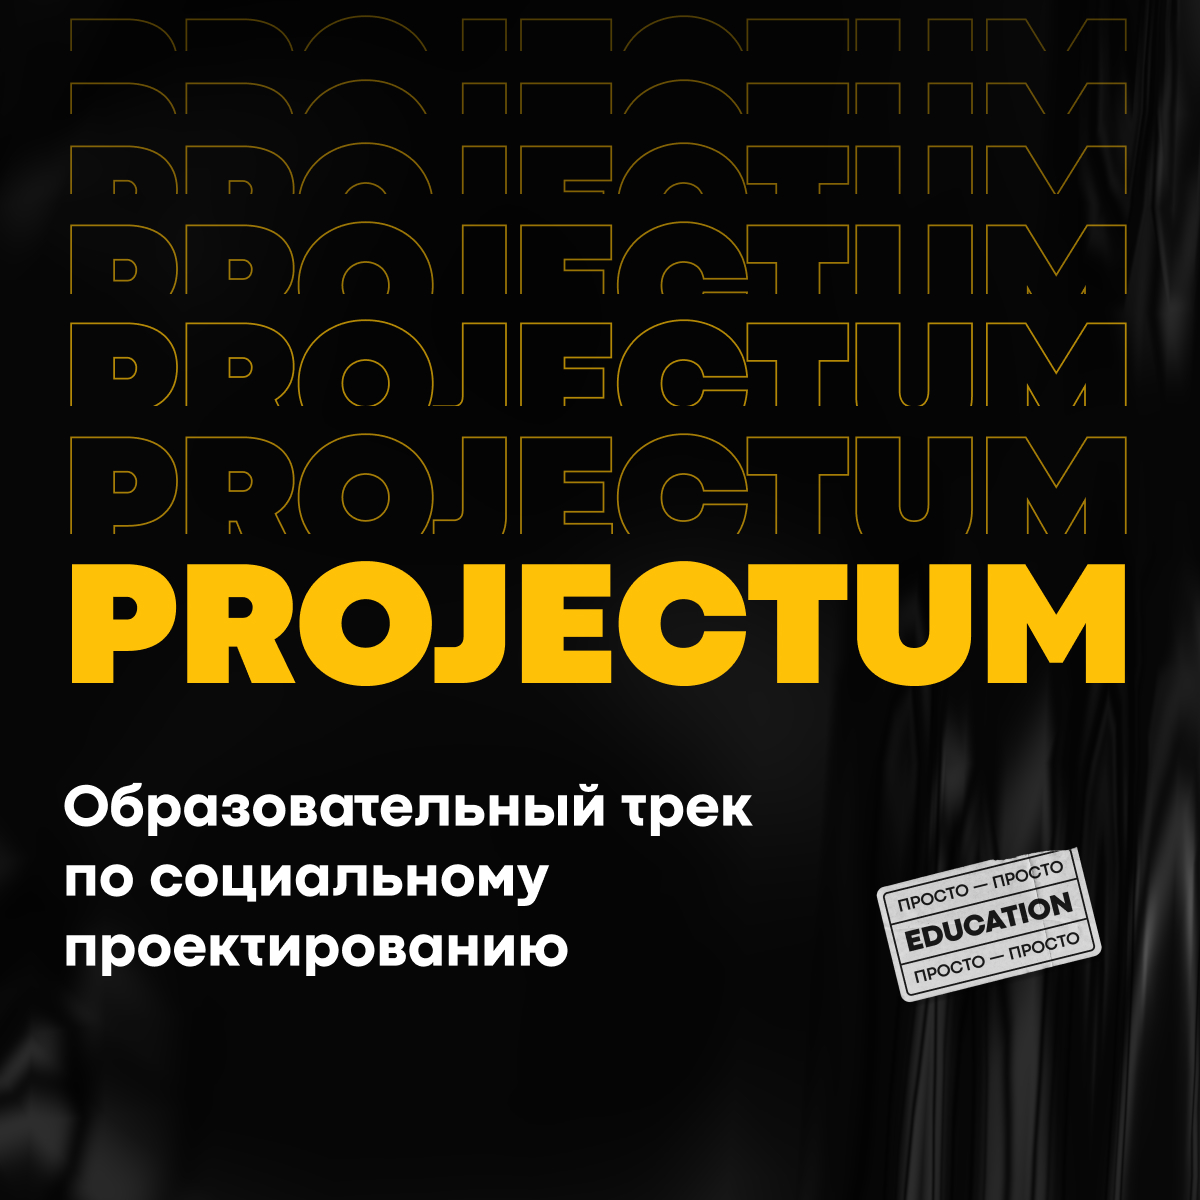 Команда проекта. Образовательный трек по социальному проектированию Projectum